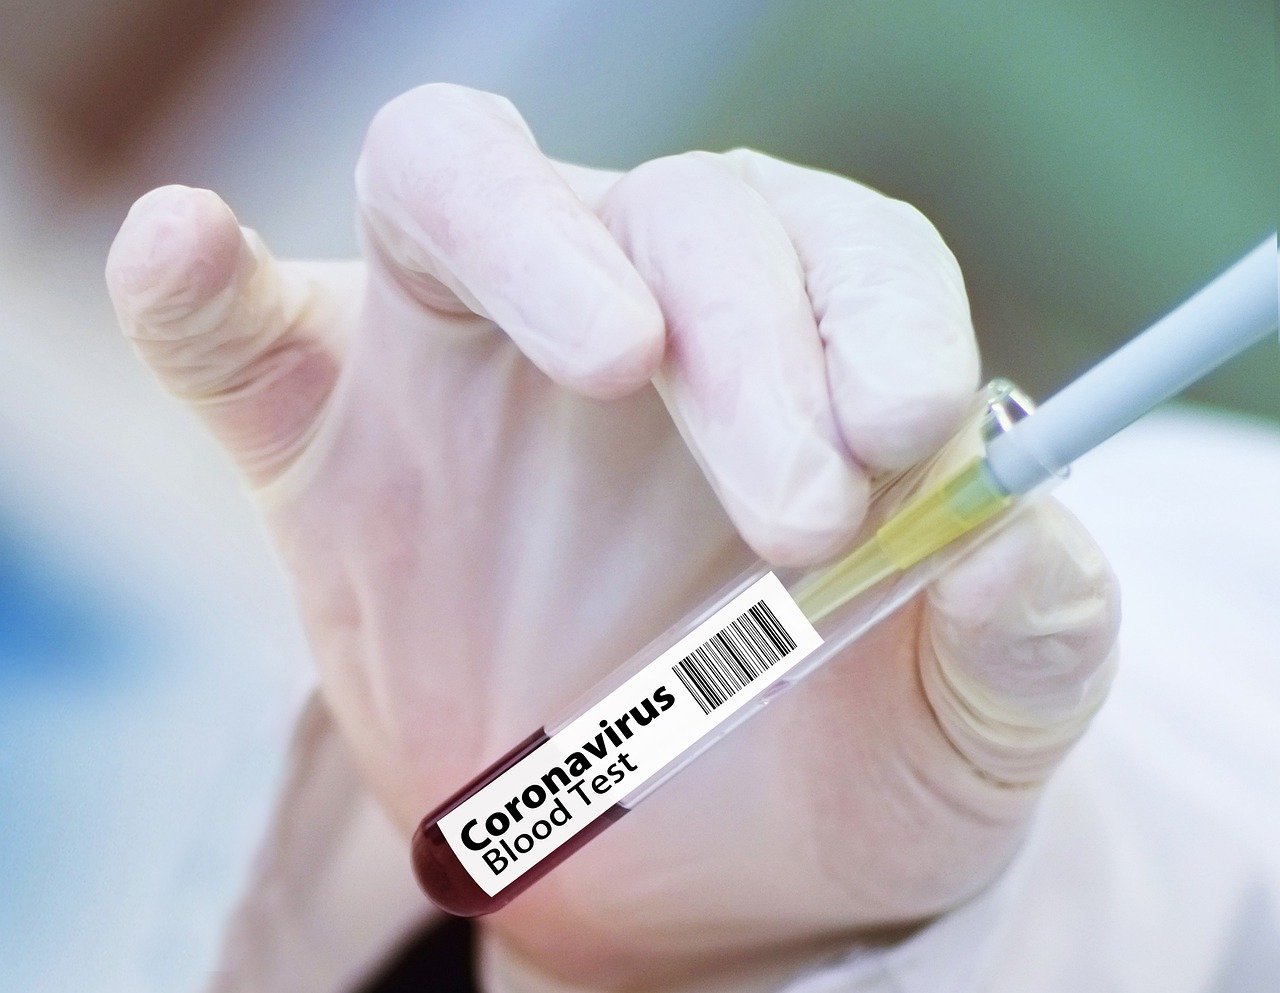 Coronavirus, riduzione di casi e ricoveri: la risposta del servizio sanitario, isolamento e contenimento